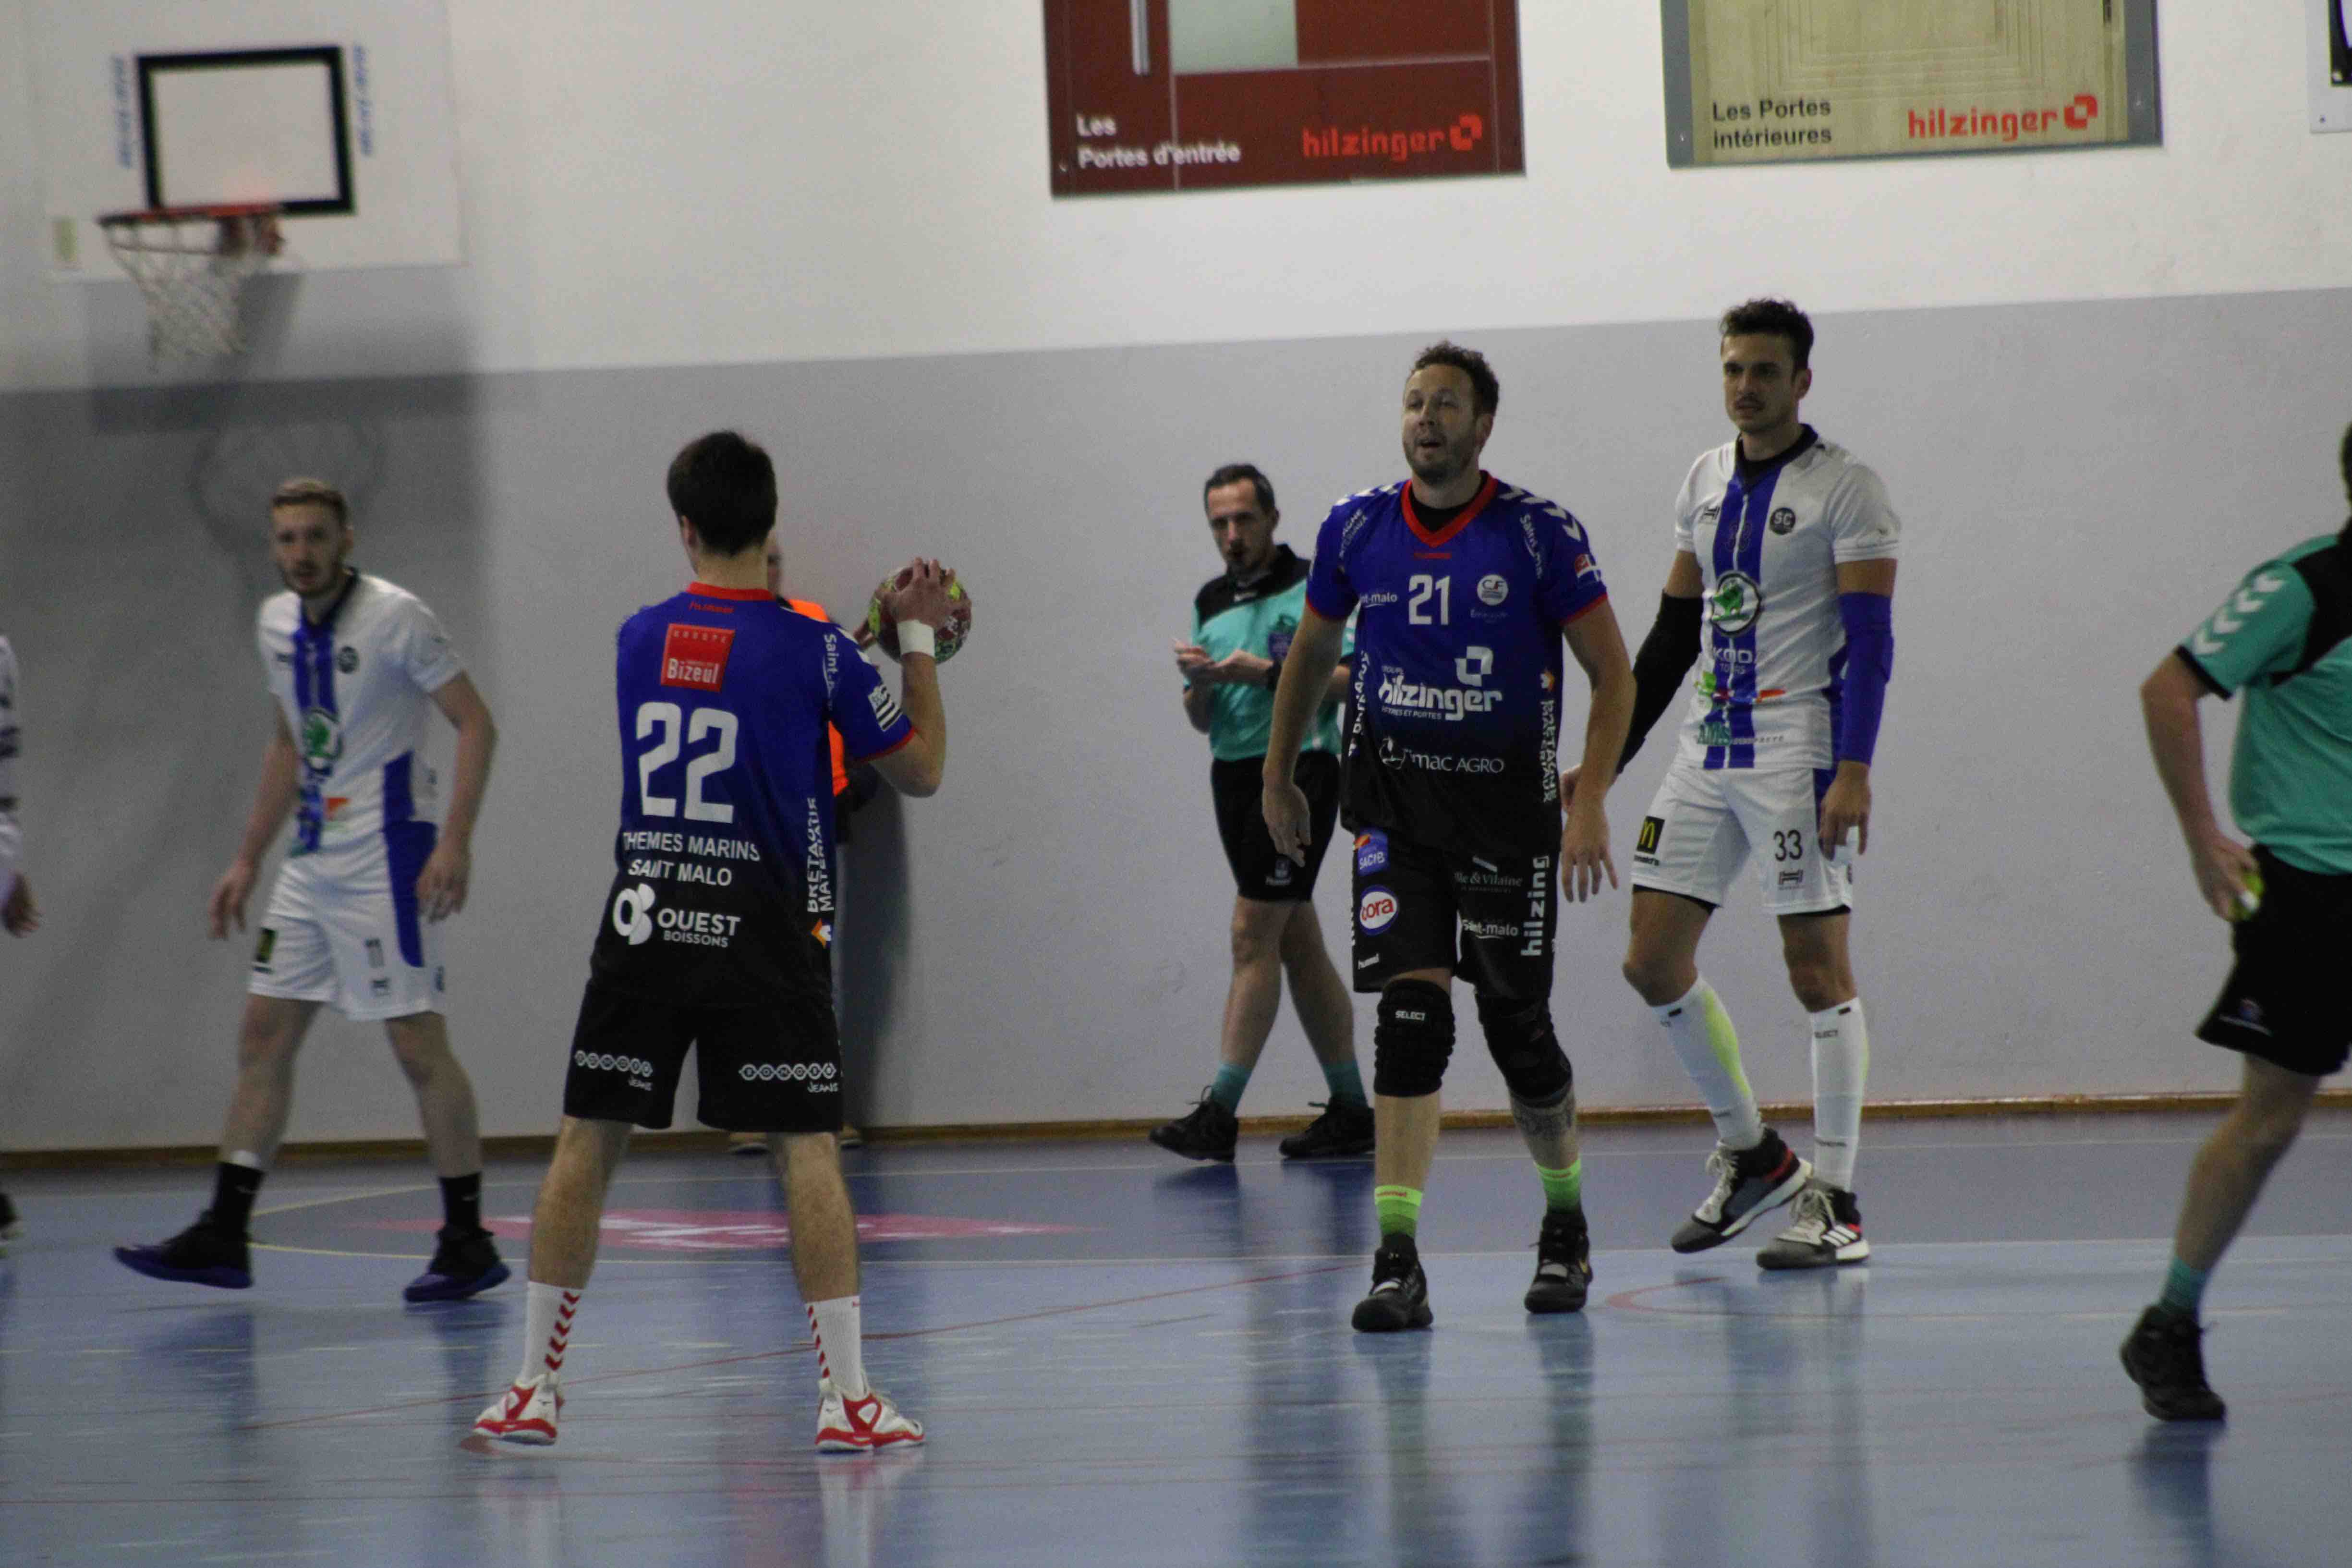 2019nov23 CJF hb _ SC handball (18)